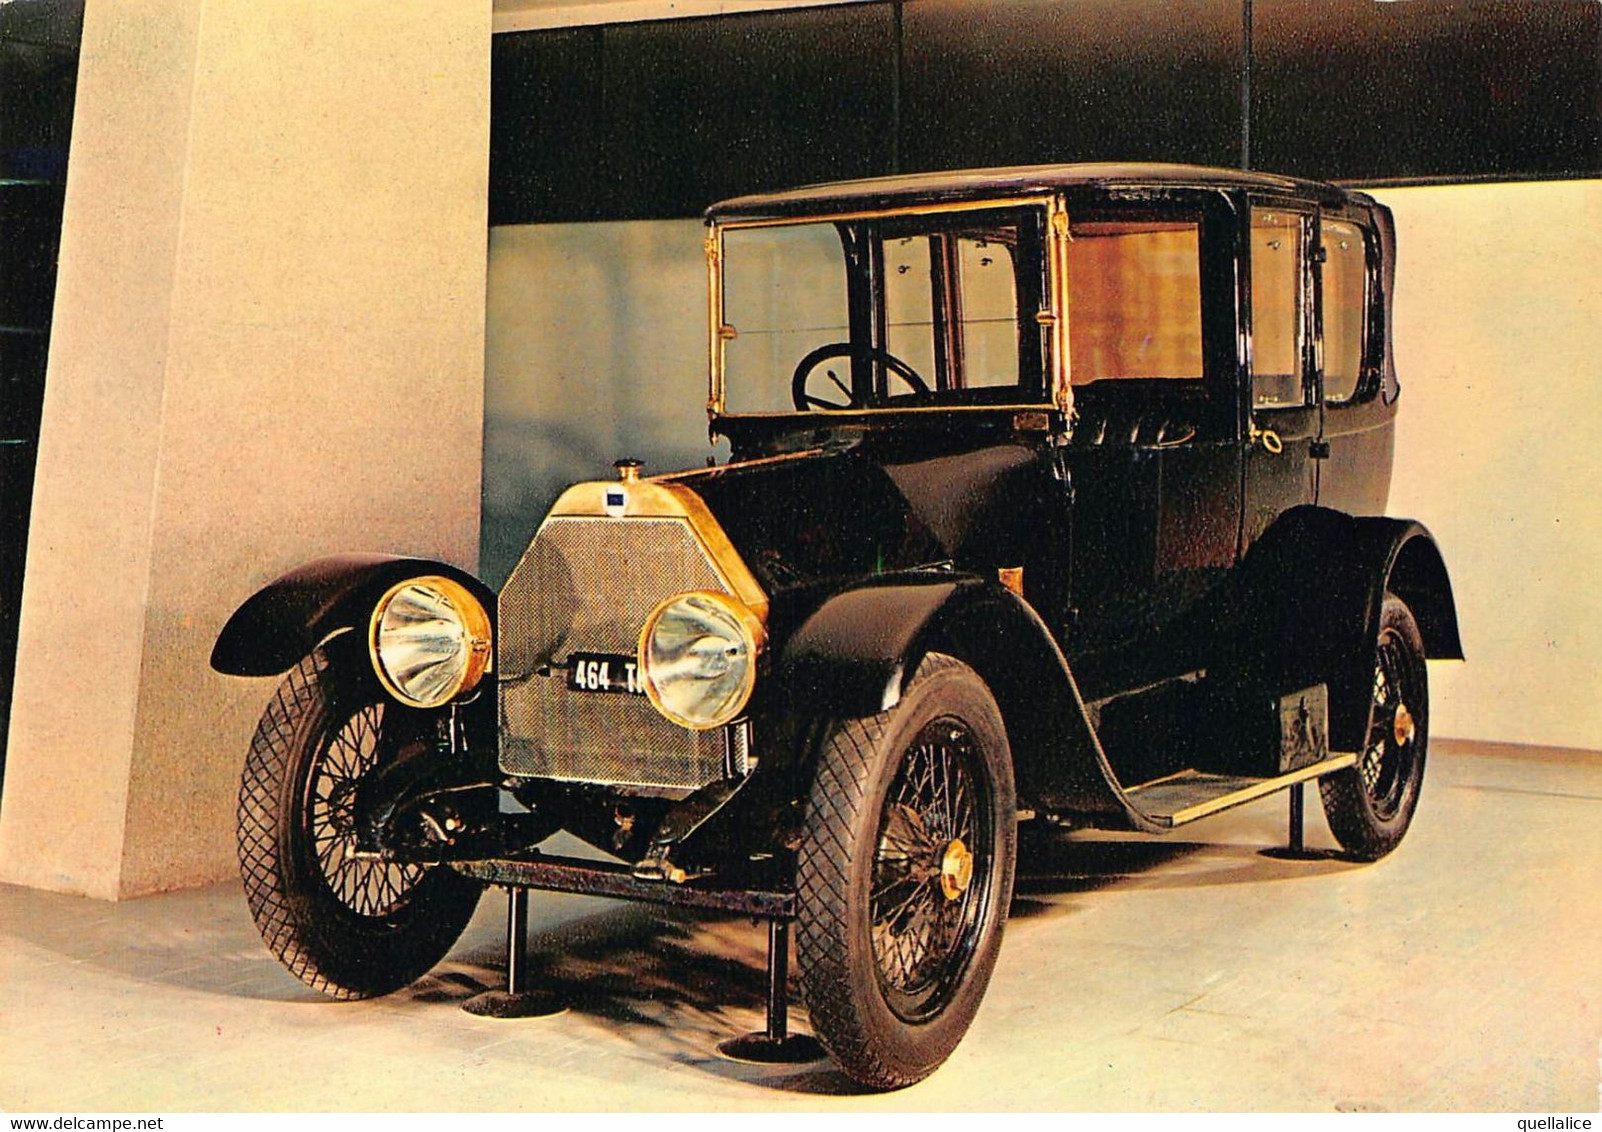 02427 "TORINO - MUSEO DELL'AUTOMOBILE - CARLO BISCARETTI DI RUFFIA - LANCIA THETA 1913" AUTO. CART NON SPED - Museos